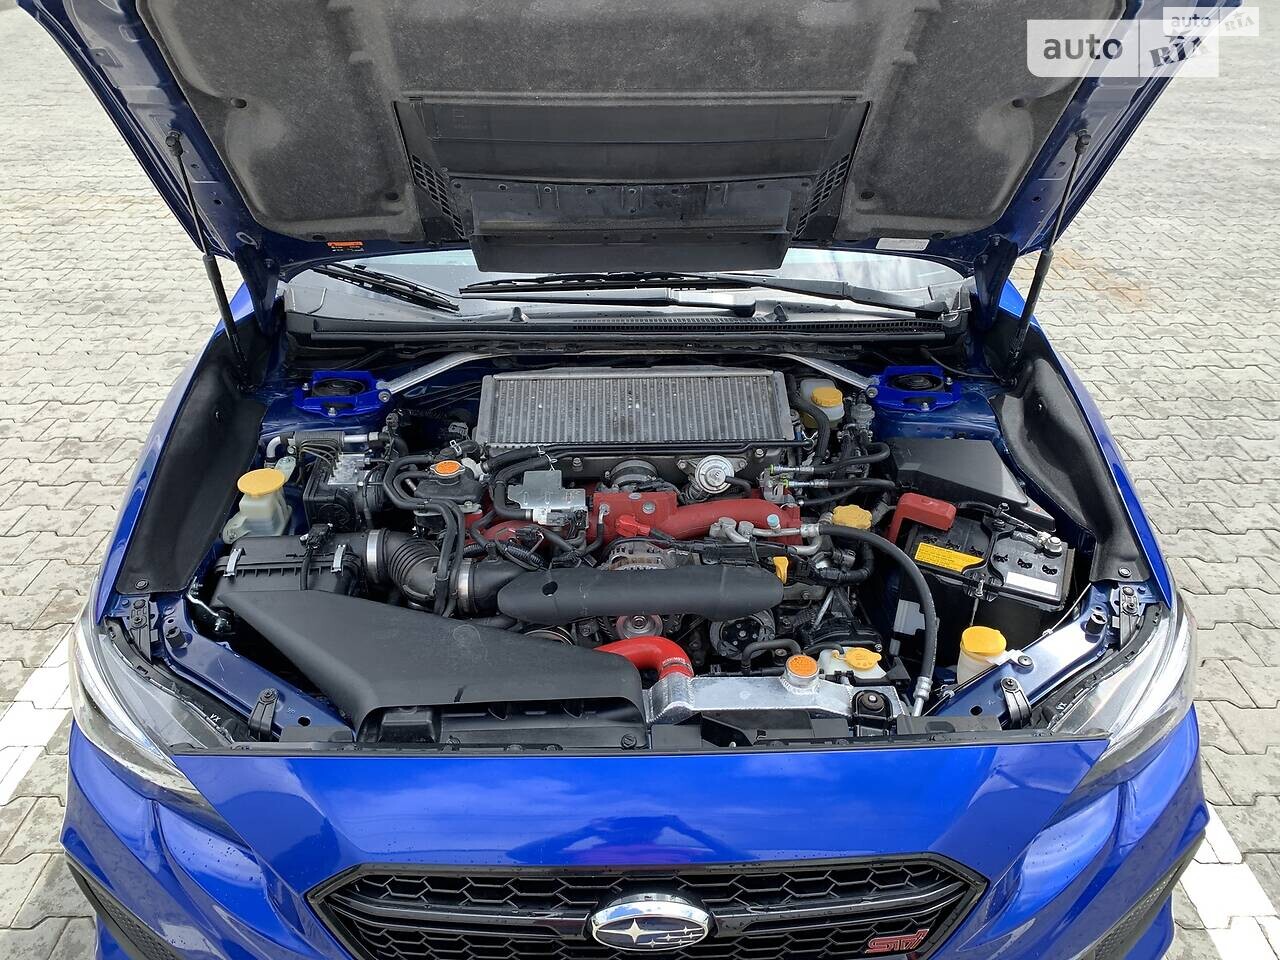 Subaru WRX STI 2017